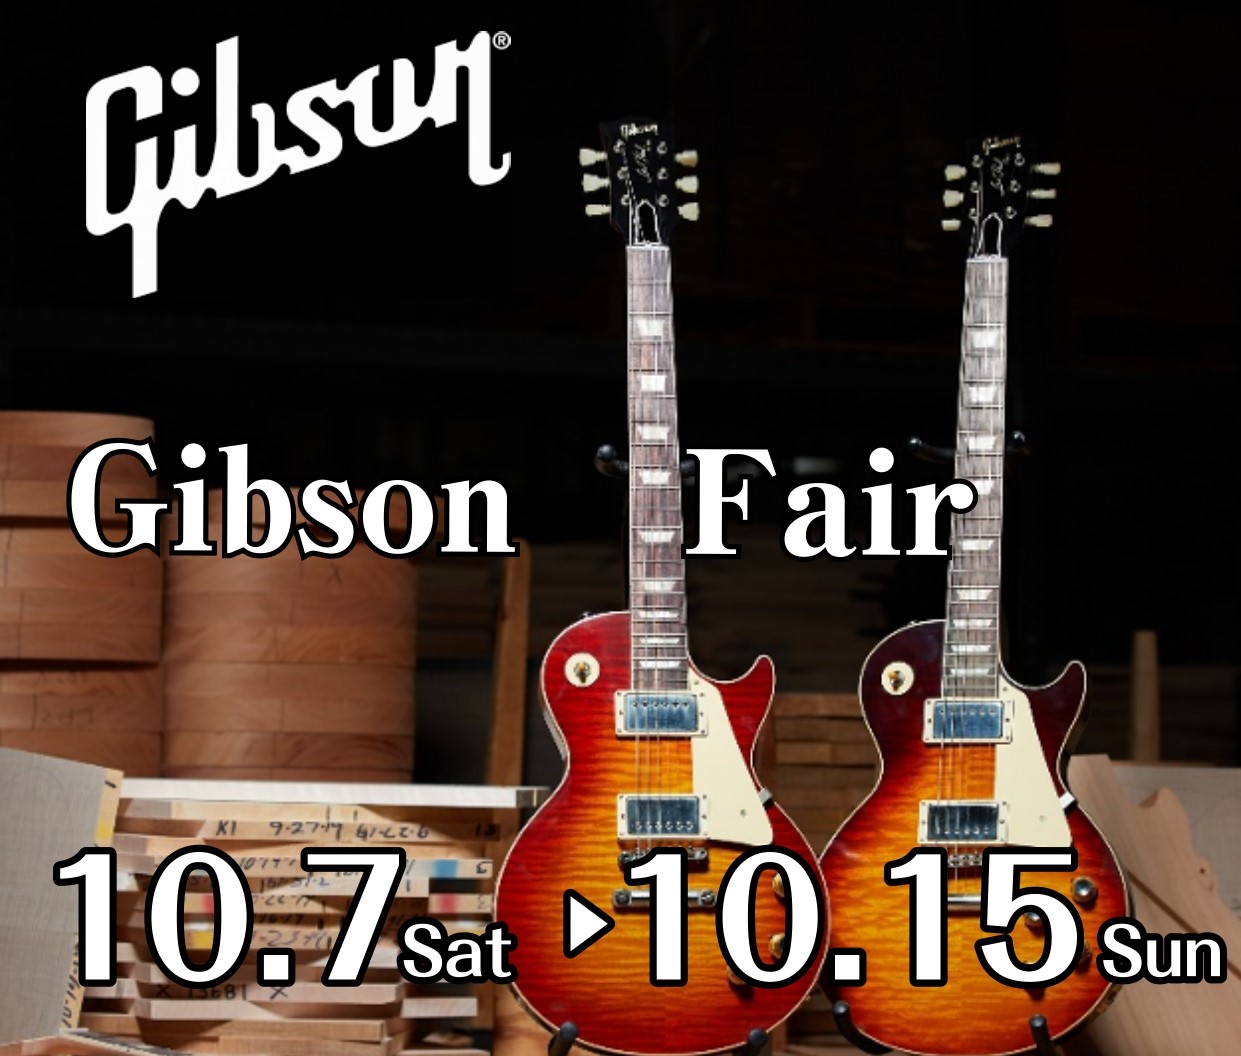 こんにちは！広島祇園店ギター担当の川西です！ 今回はなんと…！『Gibson フェア』を開催します！一時期は品薄だったGibson製品ですが、現在はラインナップも充実しております！！お求めの方は今がチャンス！ ご興味をお持ちの方はもちろん、弾いたことない方も是非一度ご試奏ください。お気軽に広島祇園店 […]